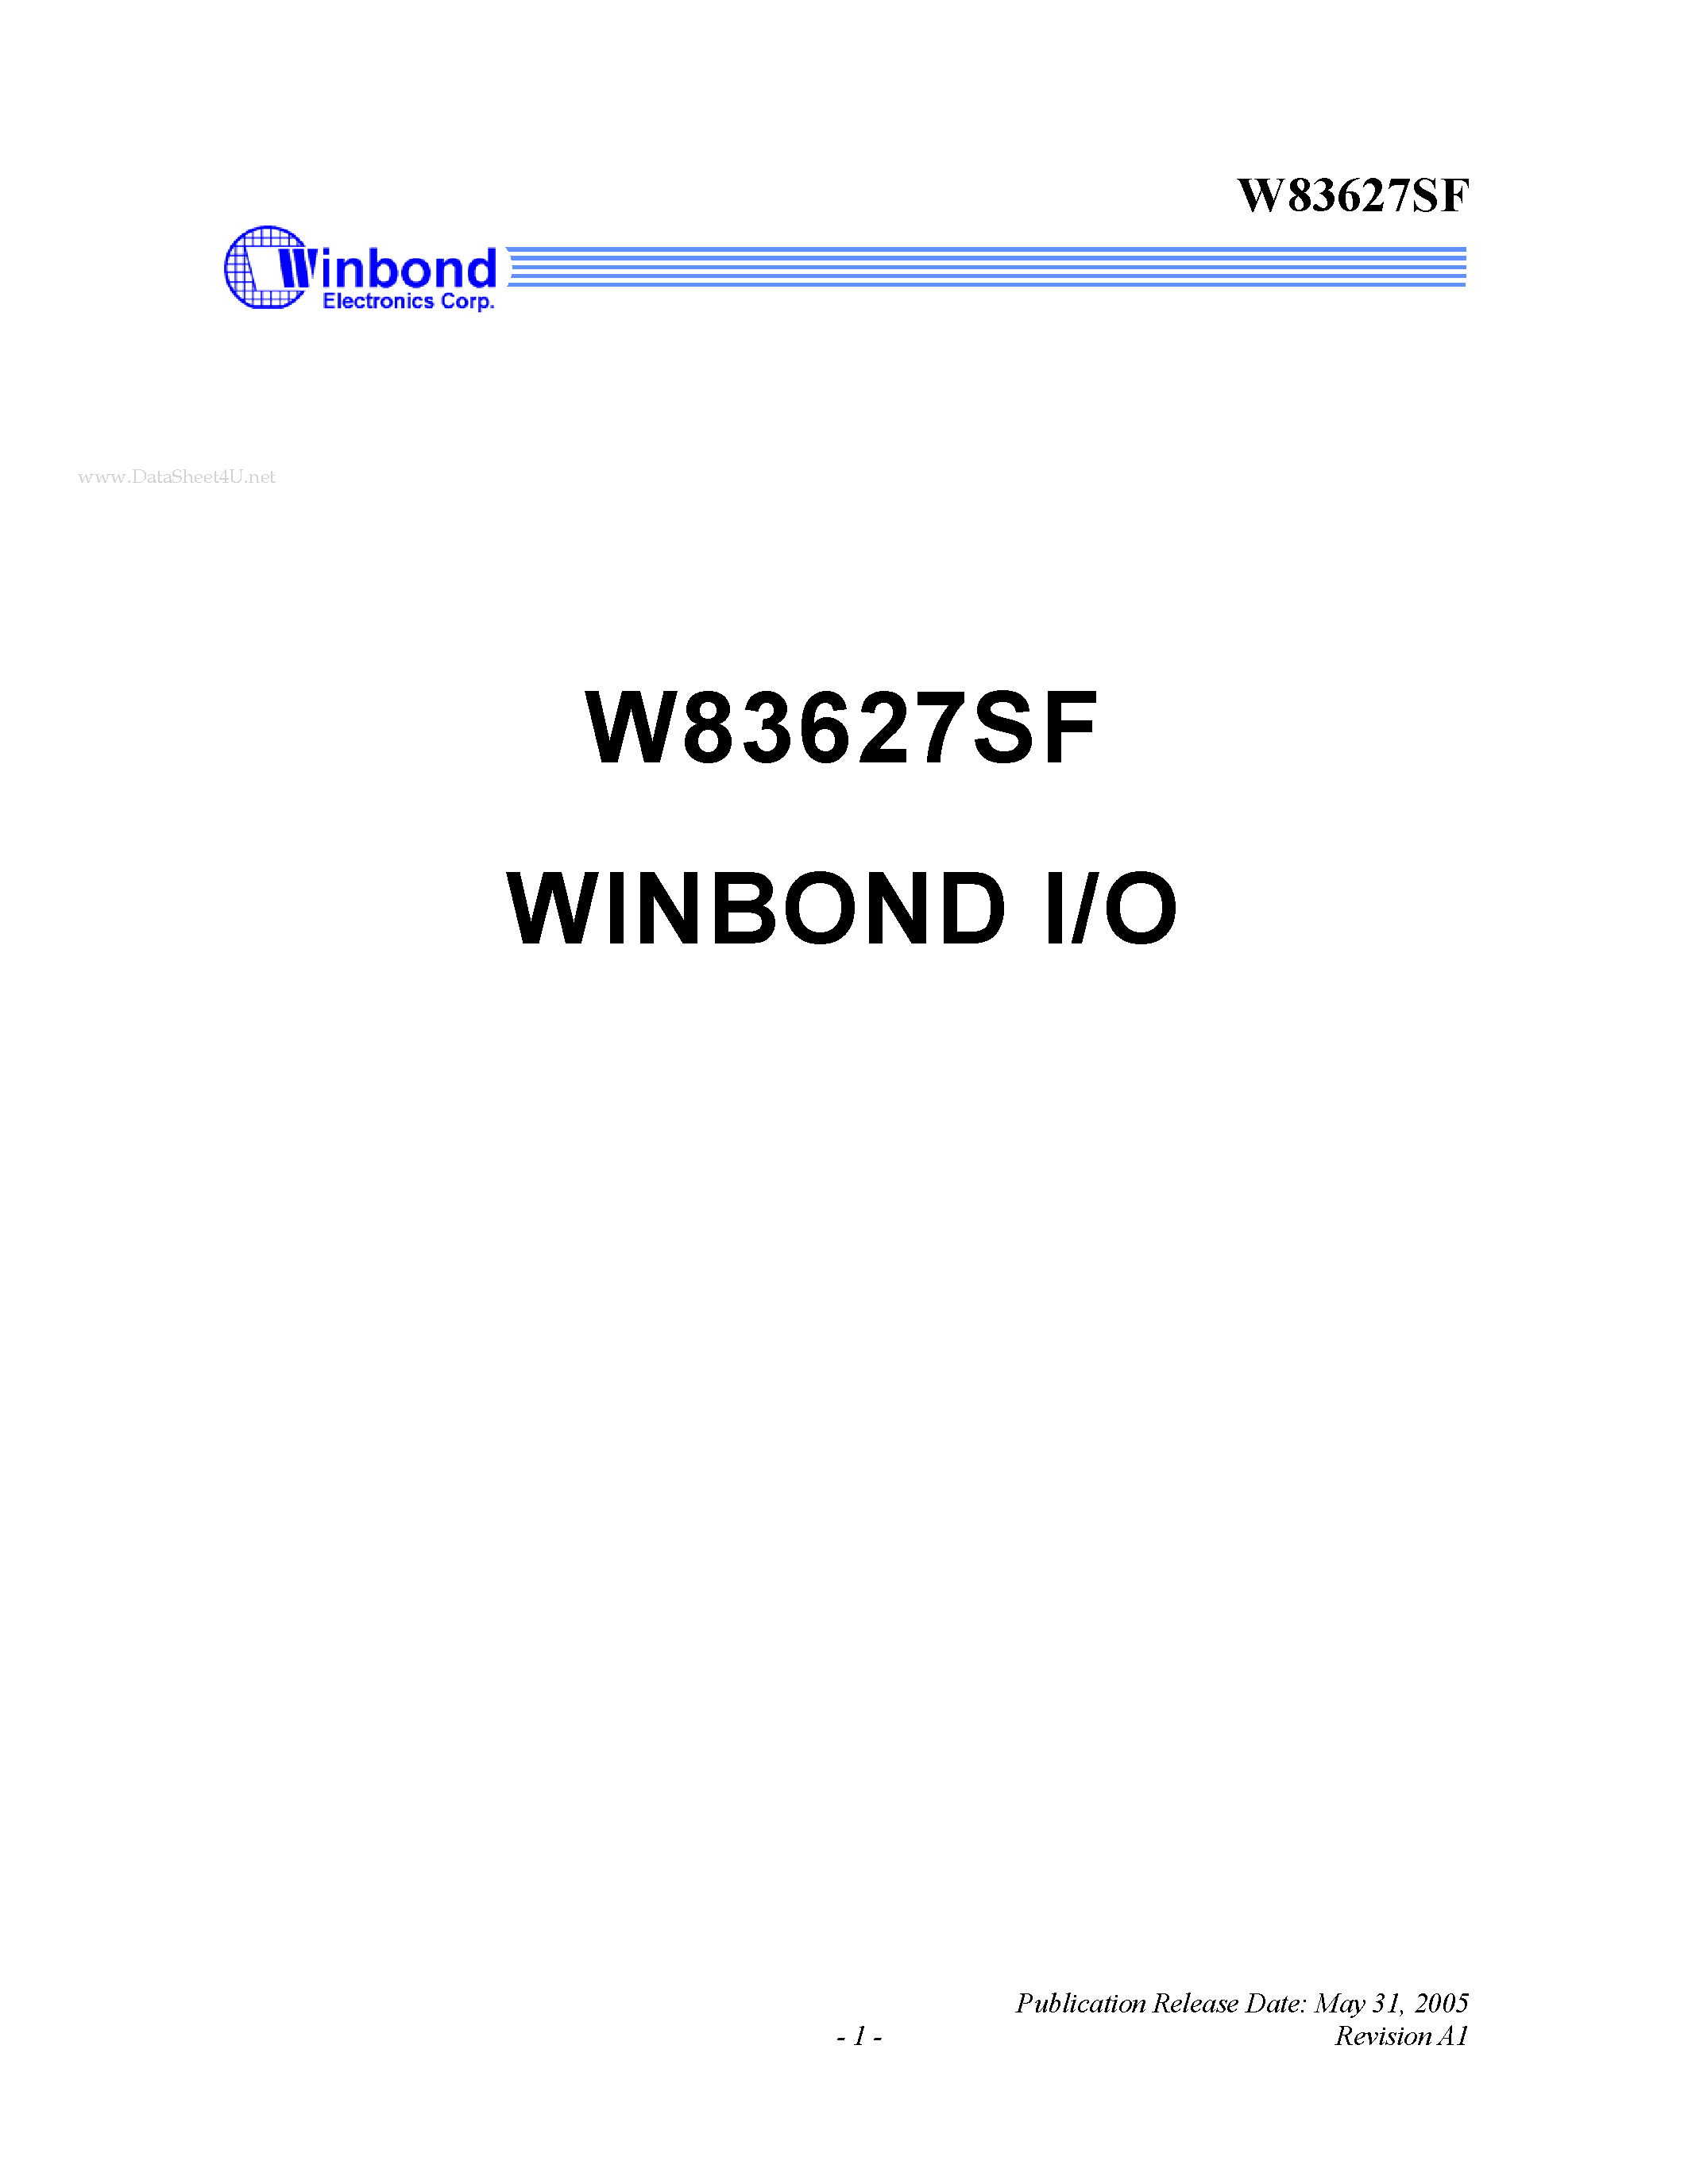 Datasheet W83627SF - WINBOND I/O page 1